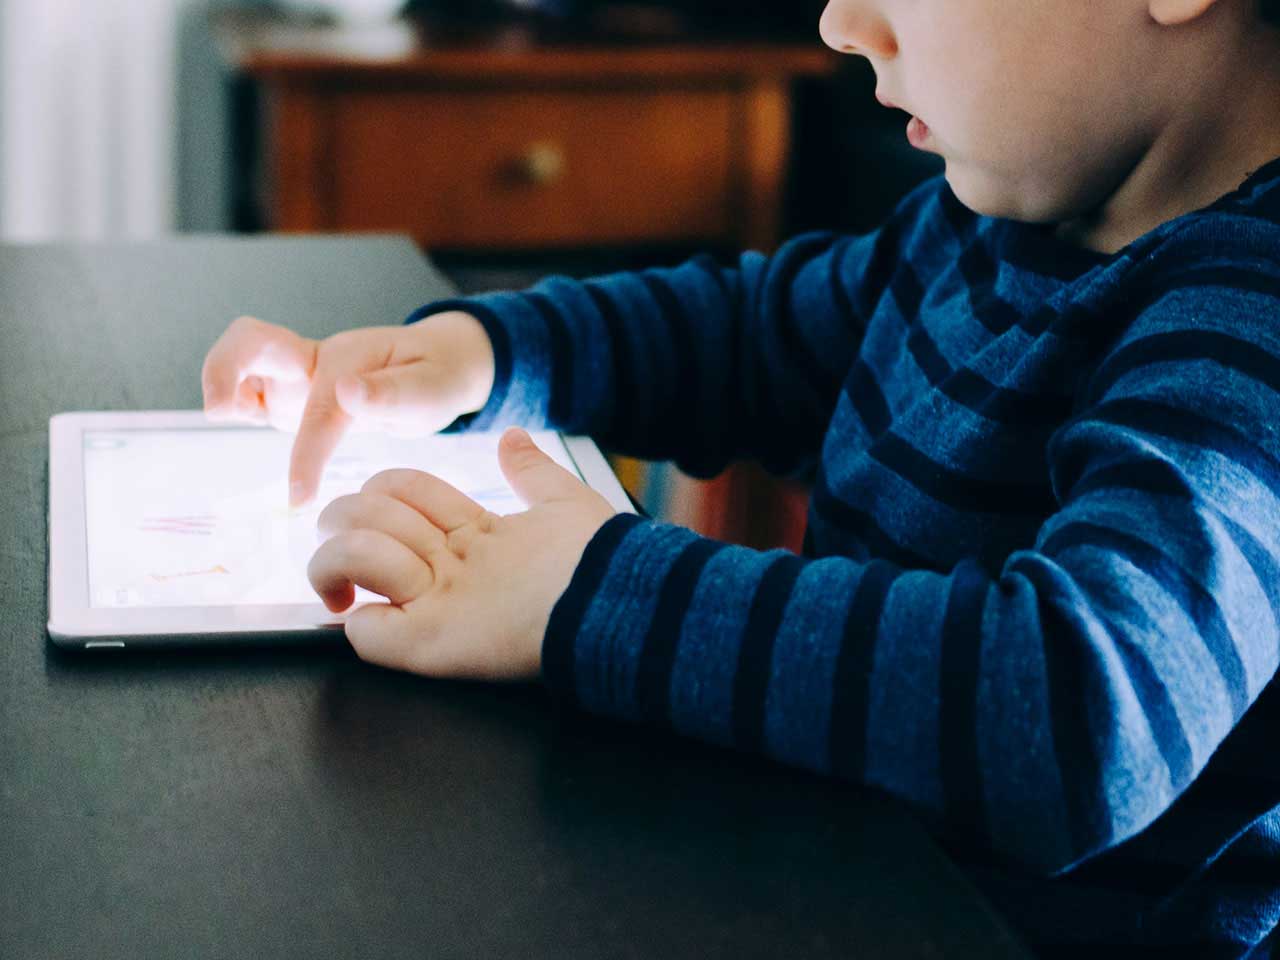 kids_smartphone_tablets